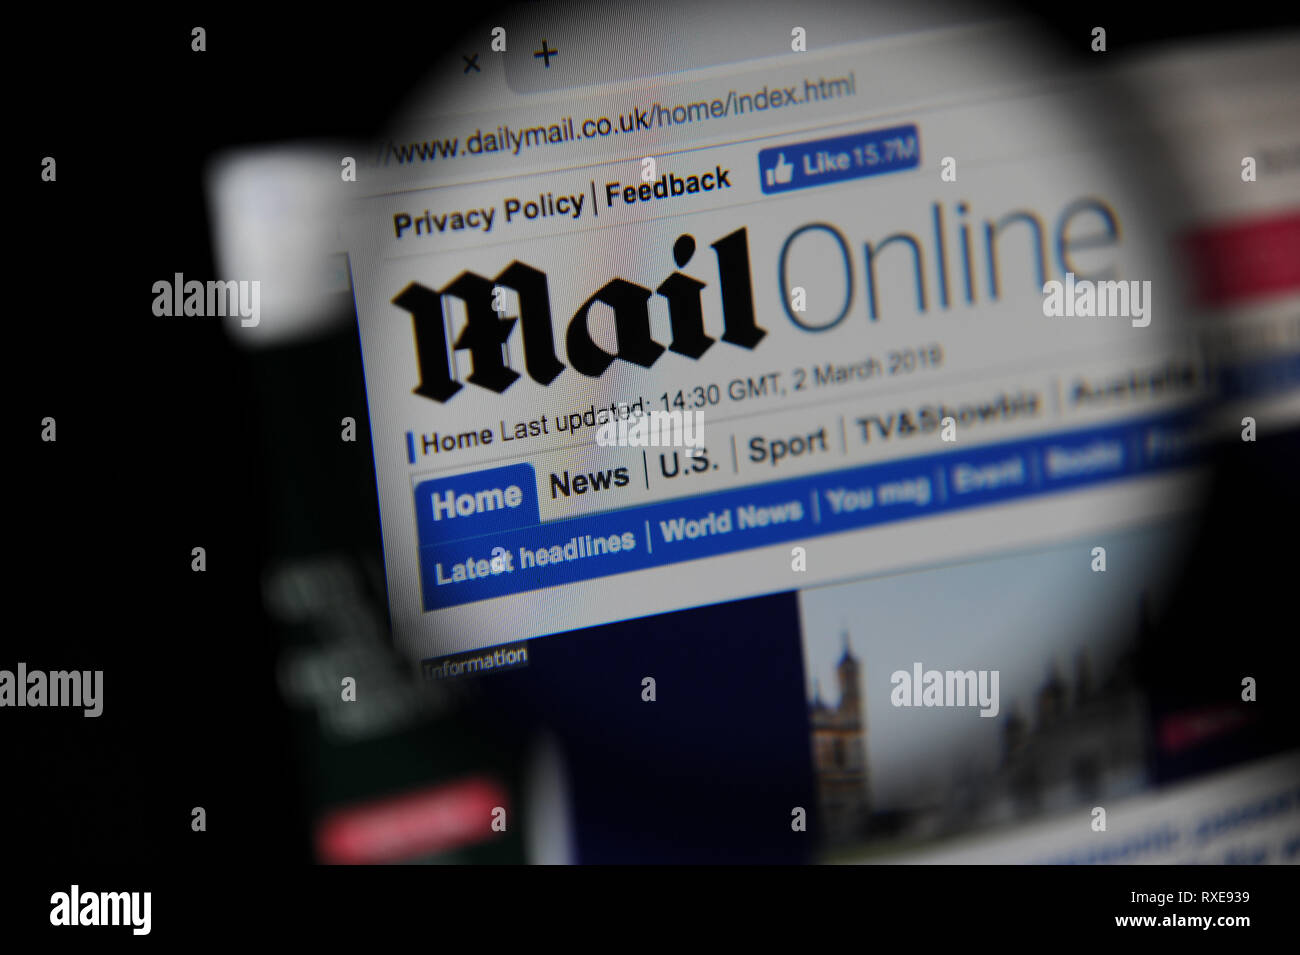 El MailOnline (Daily Mail) Sitio web vistos a través de una lupa Foto de stock